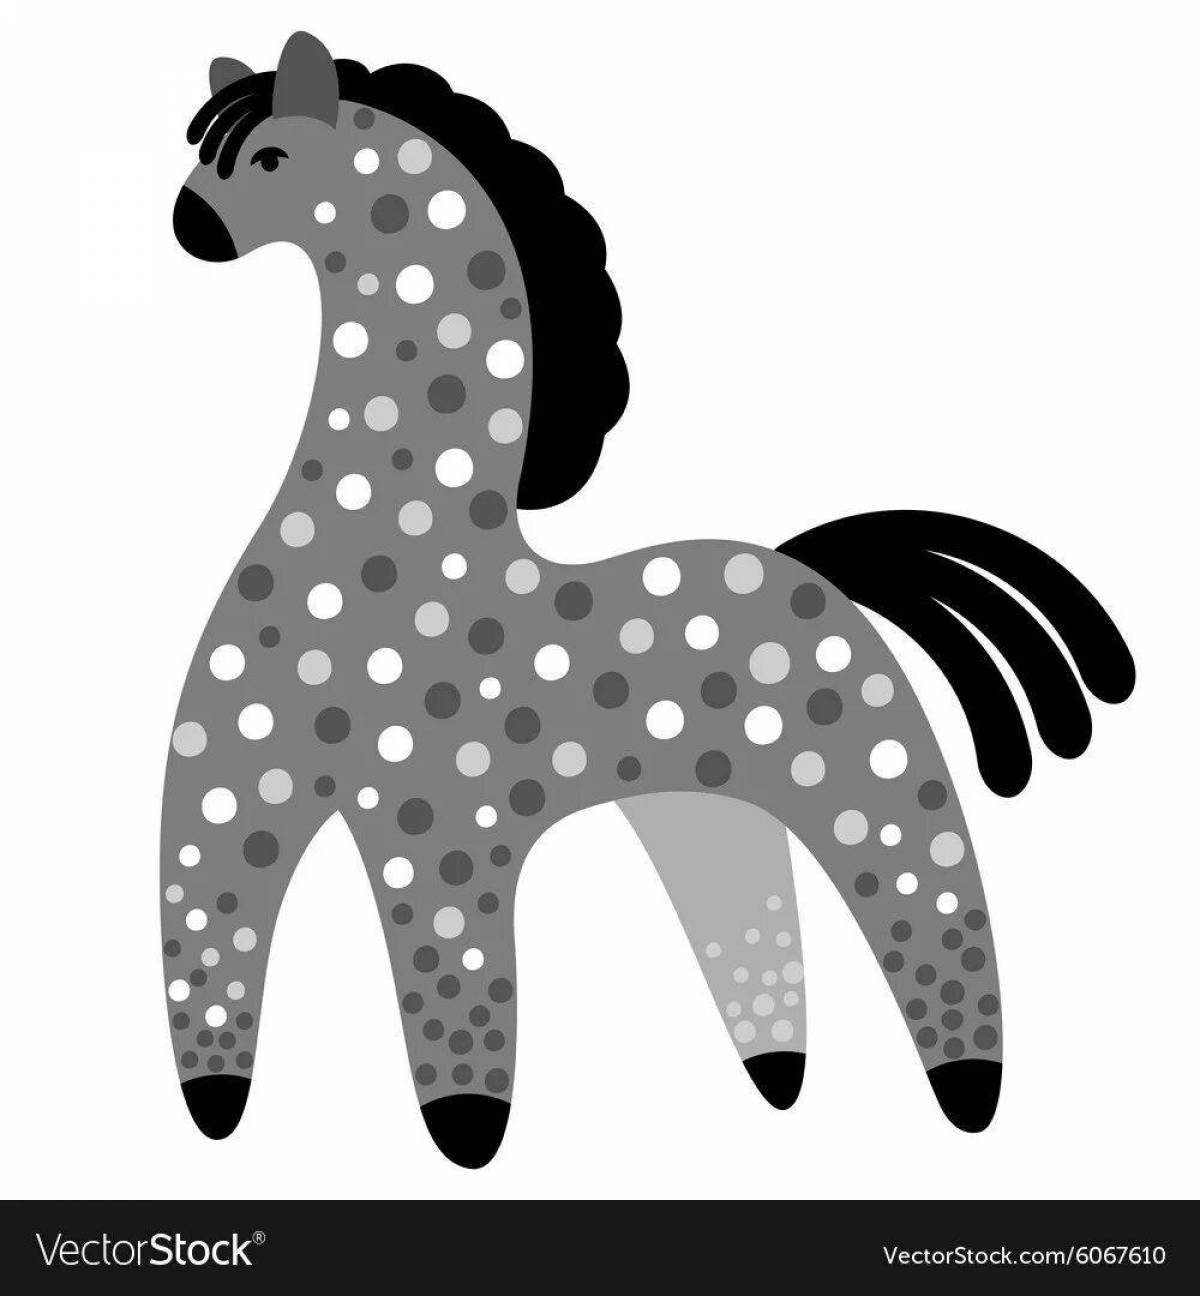 Раскраска увлекательная дымковская игрушечная лошадка